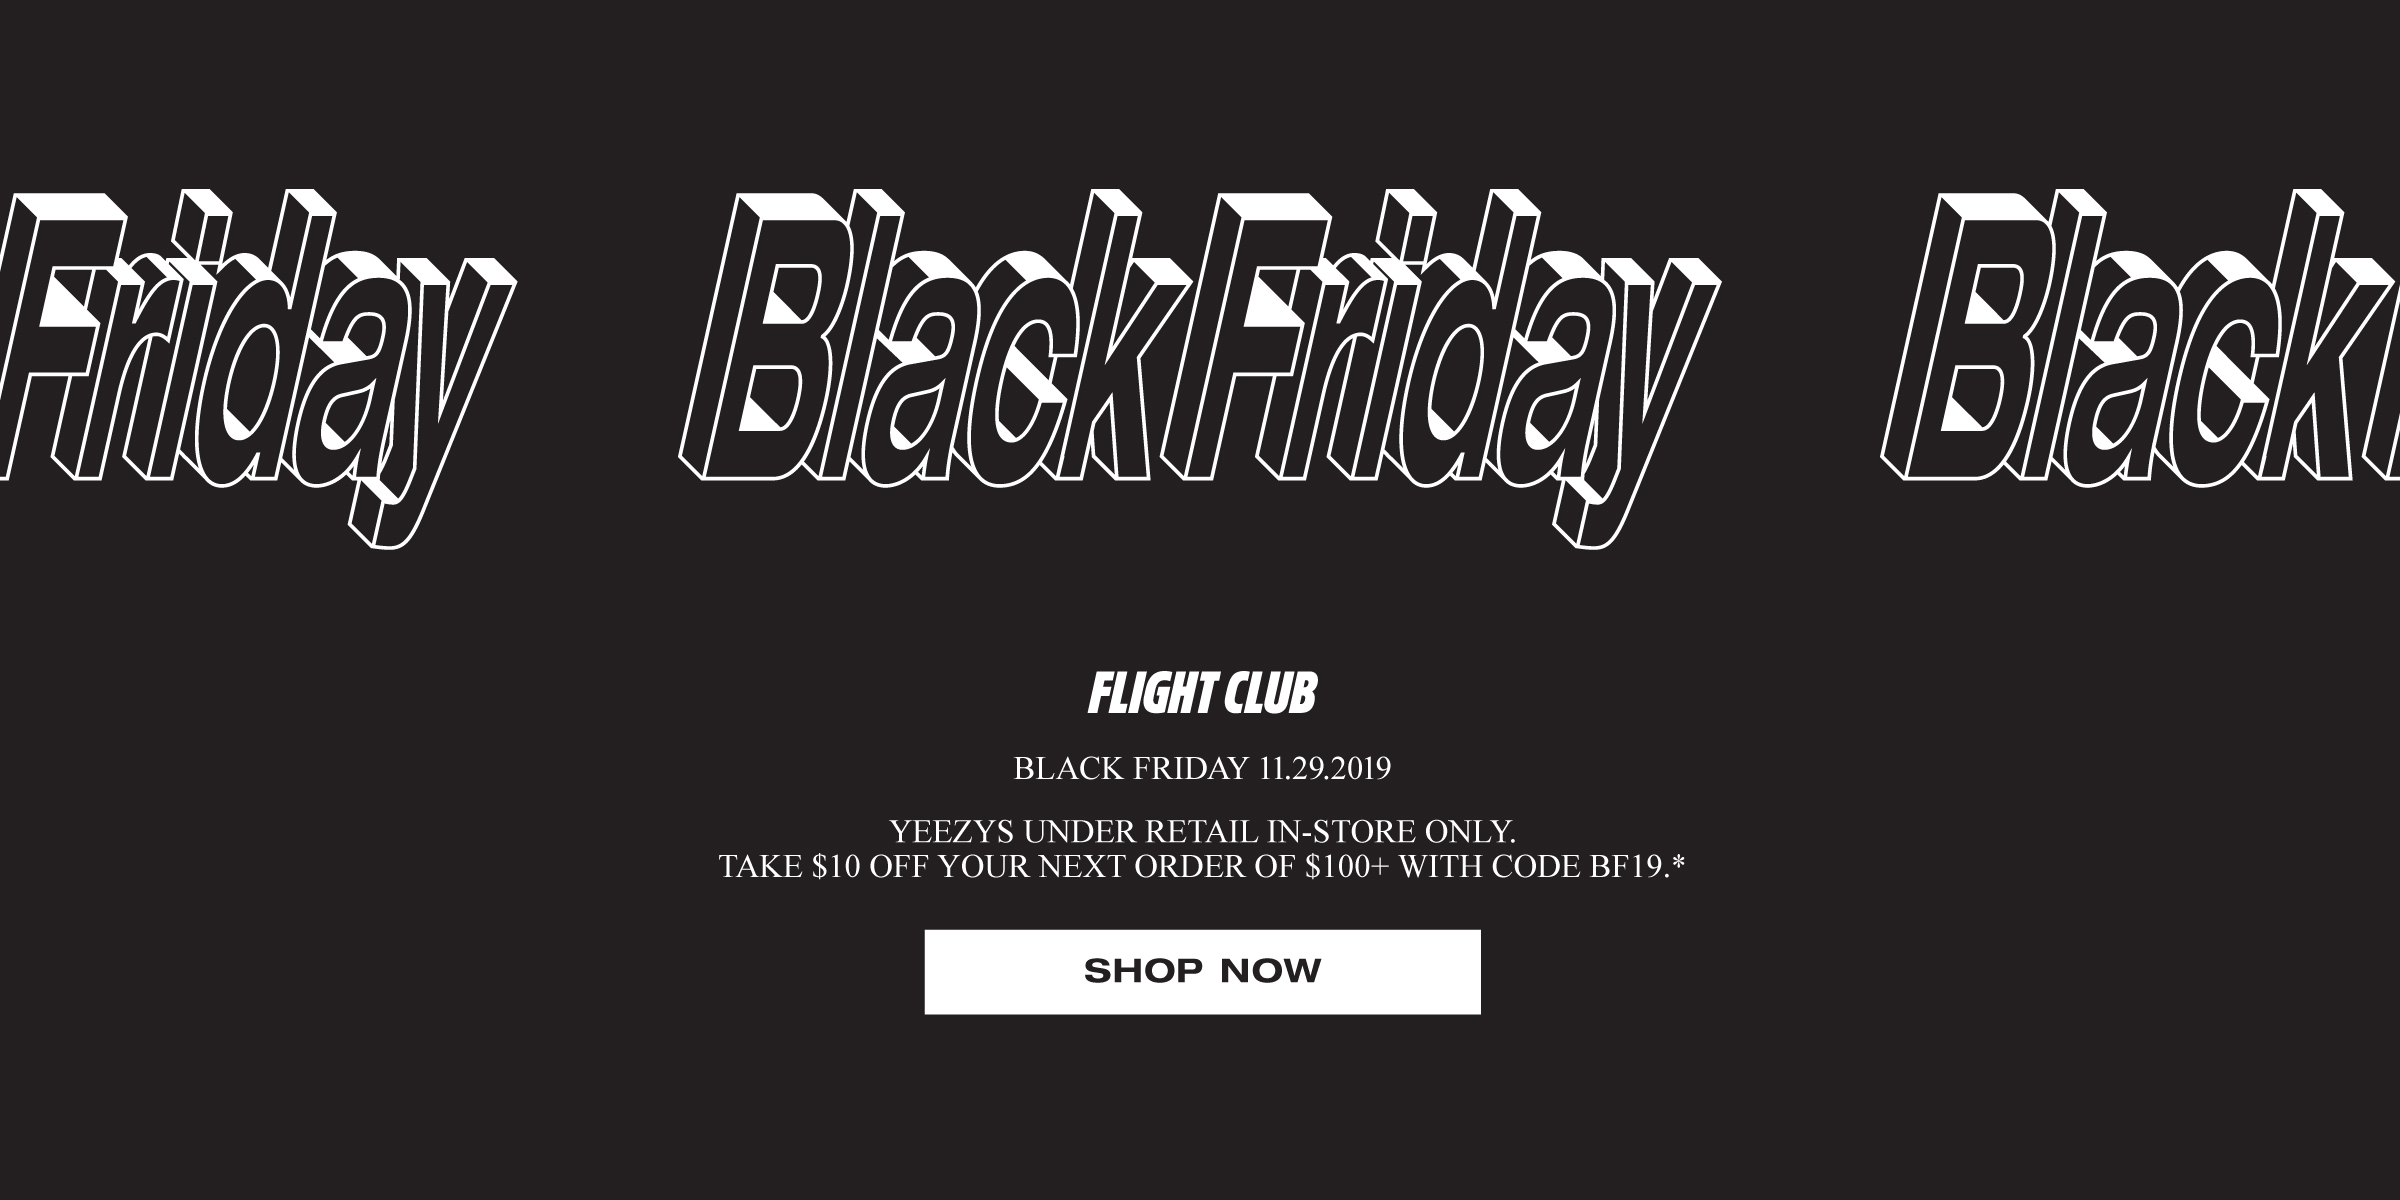 flight club black friday 2019 sale